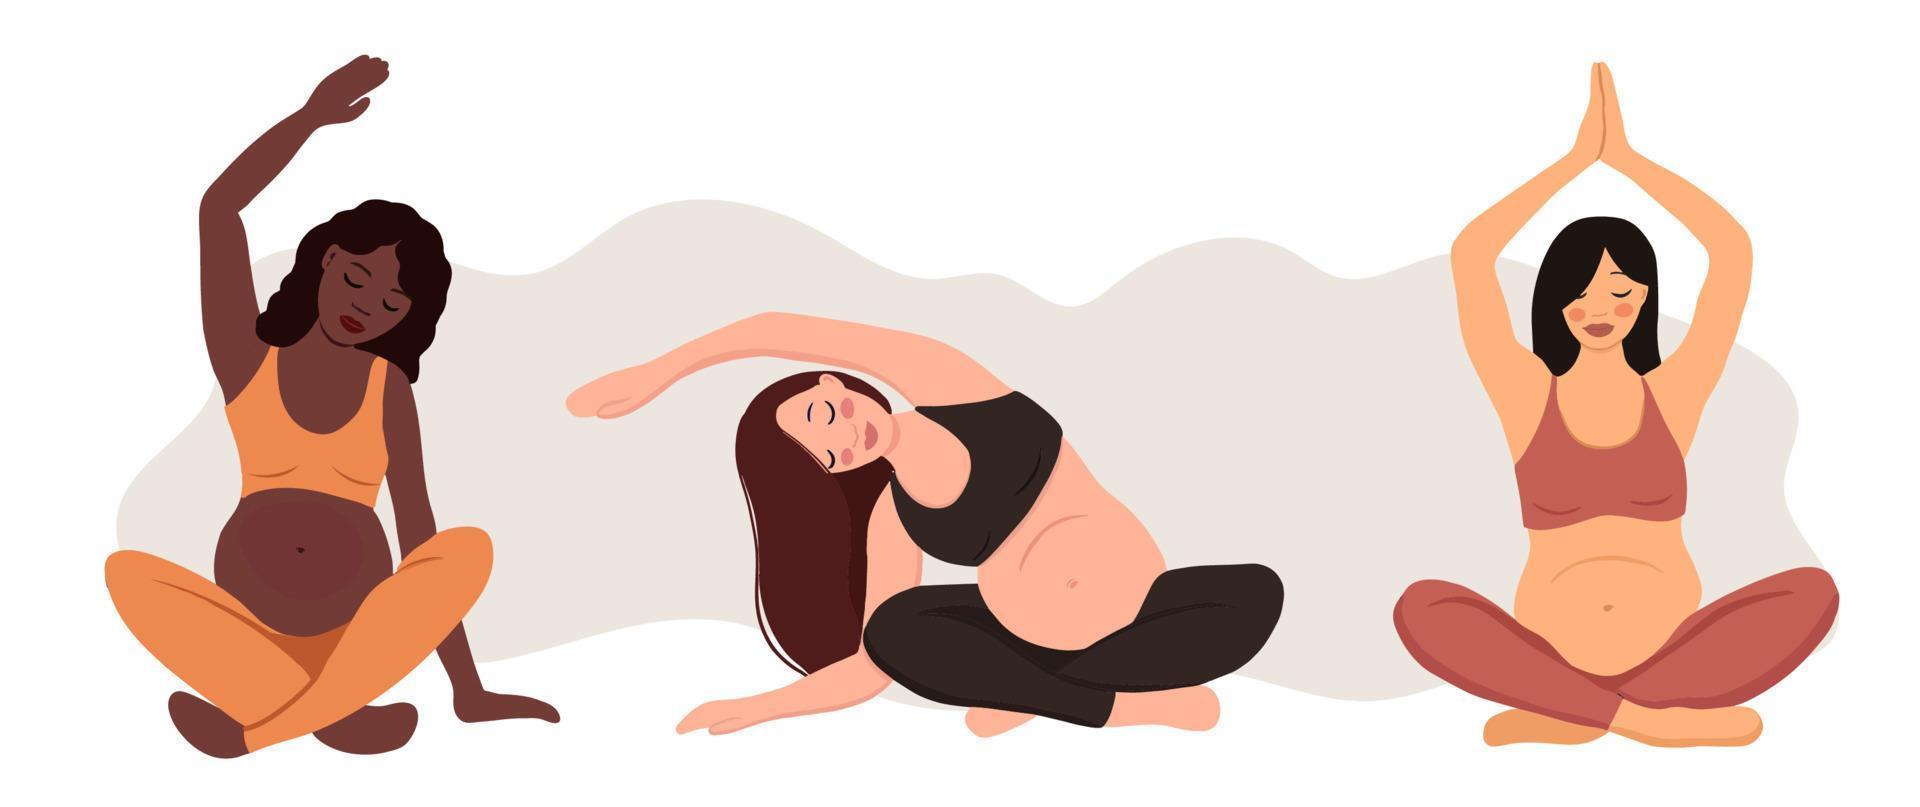 três mulheres grávidas de etnia diferente. conceito de yoga e meditação pregrant, ilustração vetorial vetor